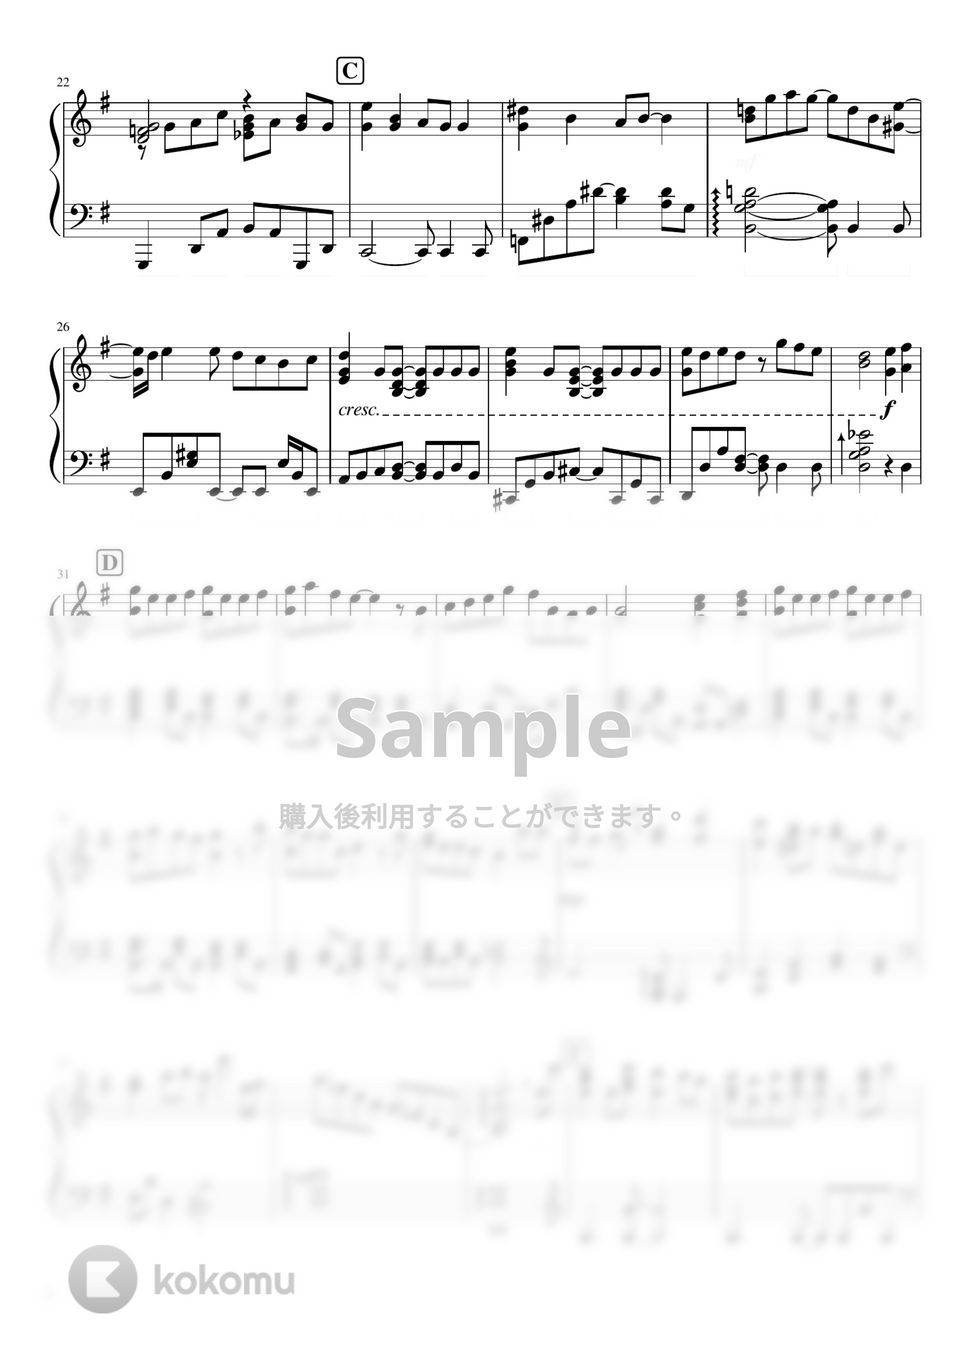 なにわ男子 - One Pocket (なにわ男子/3rd single『ハッピーサプライズ』カップリング曲) by ピアノぷりん